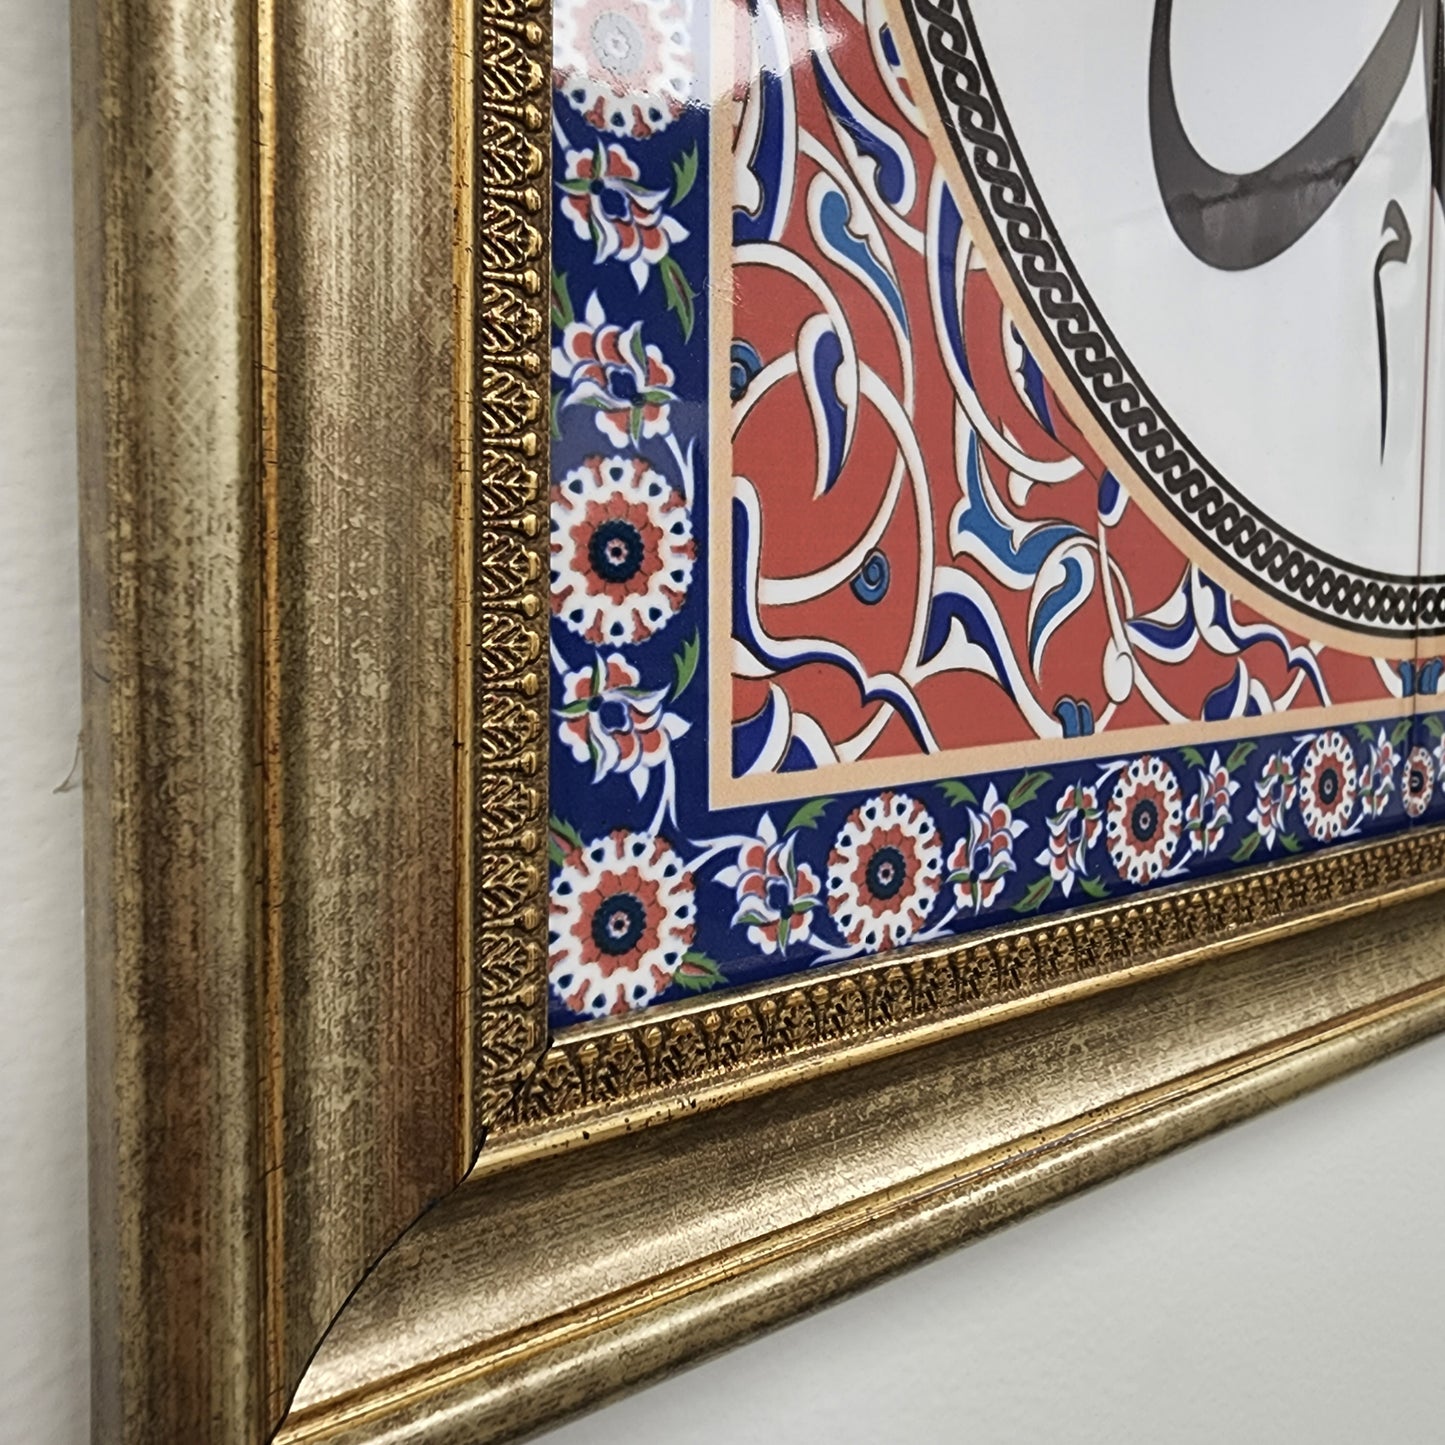 Muhammad - Islamic Art Calligraphy Ceramic Tile Framed